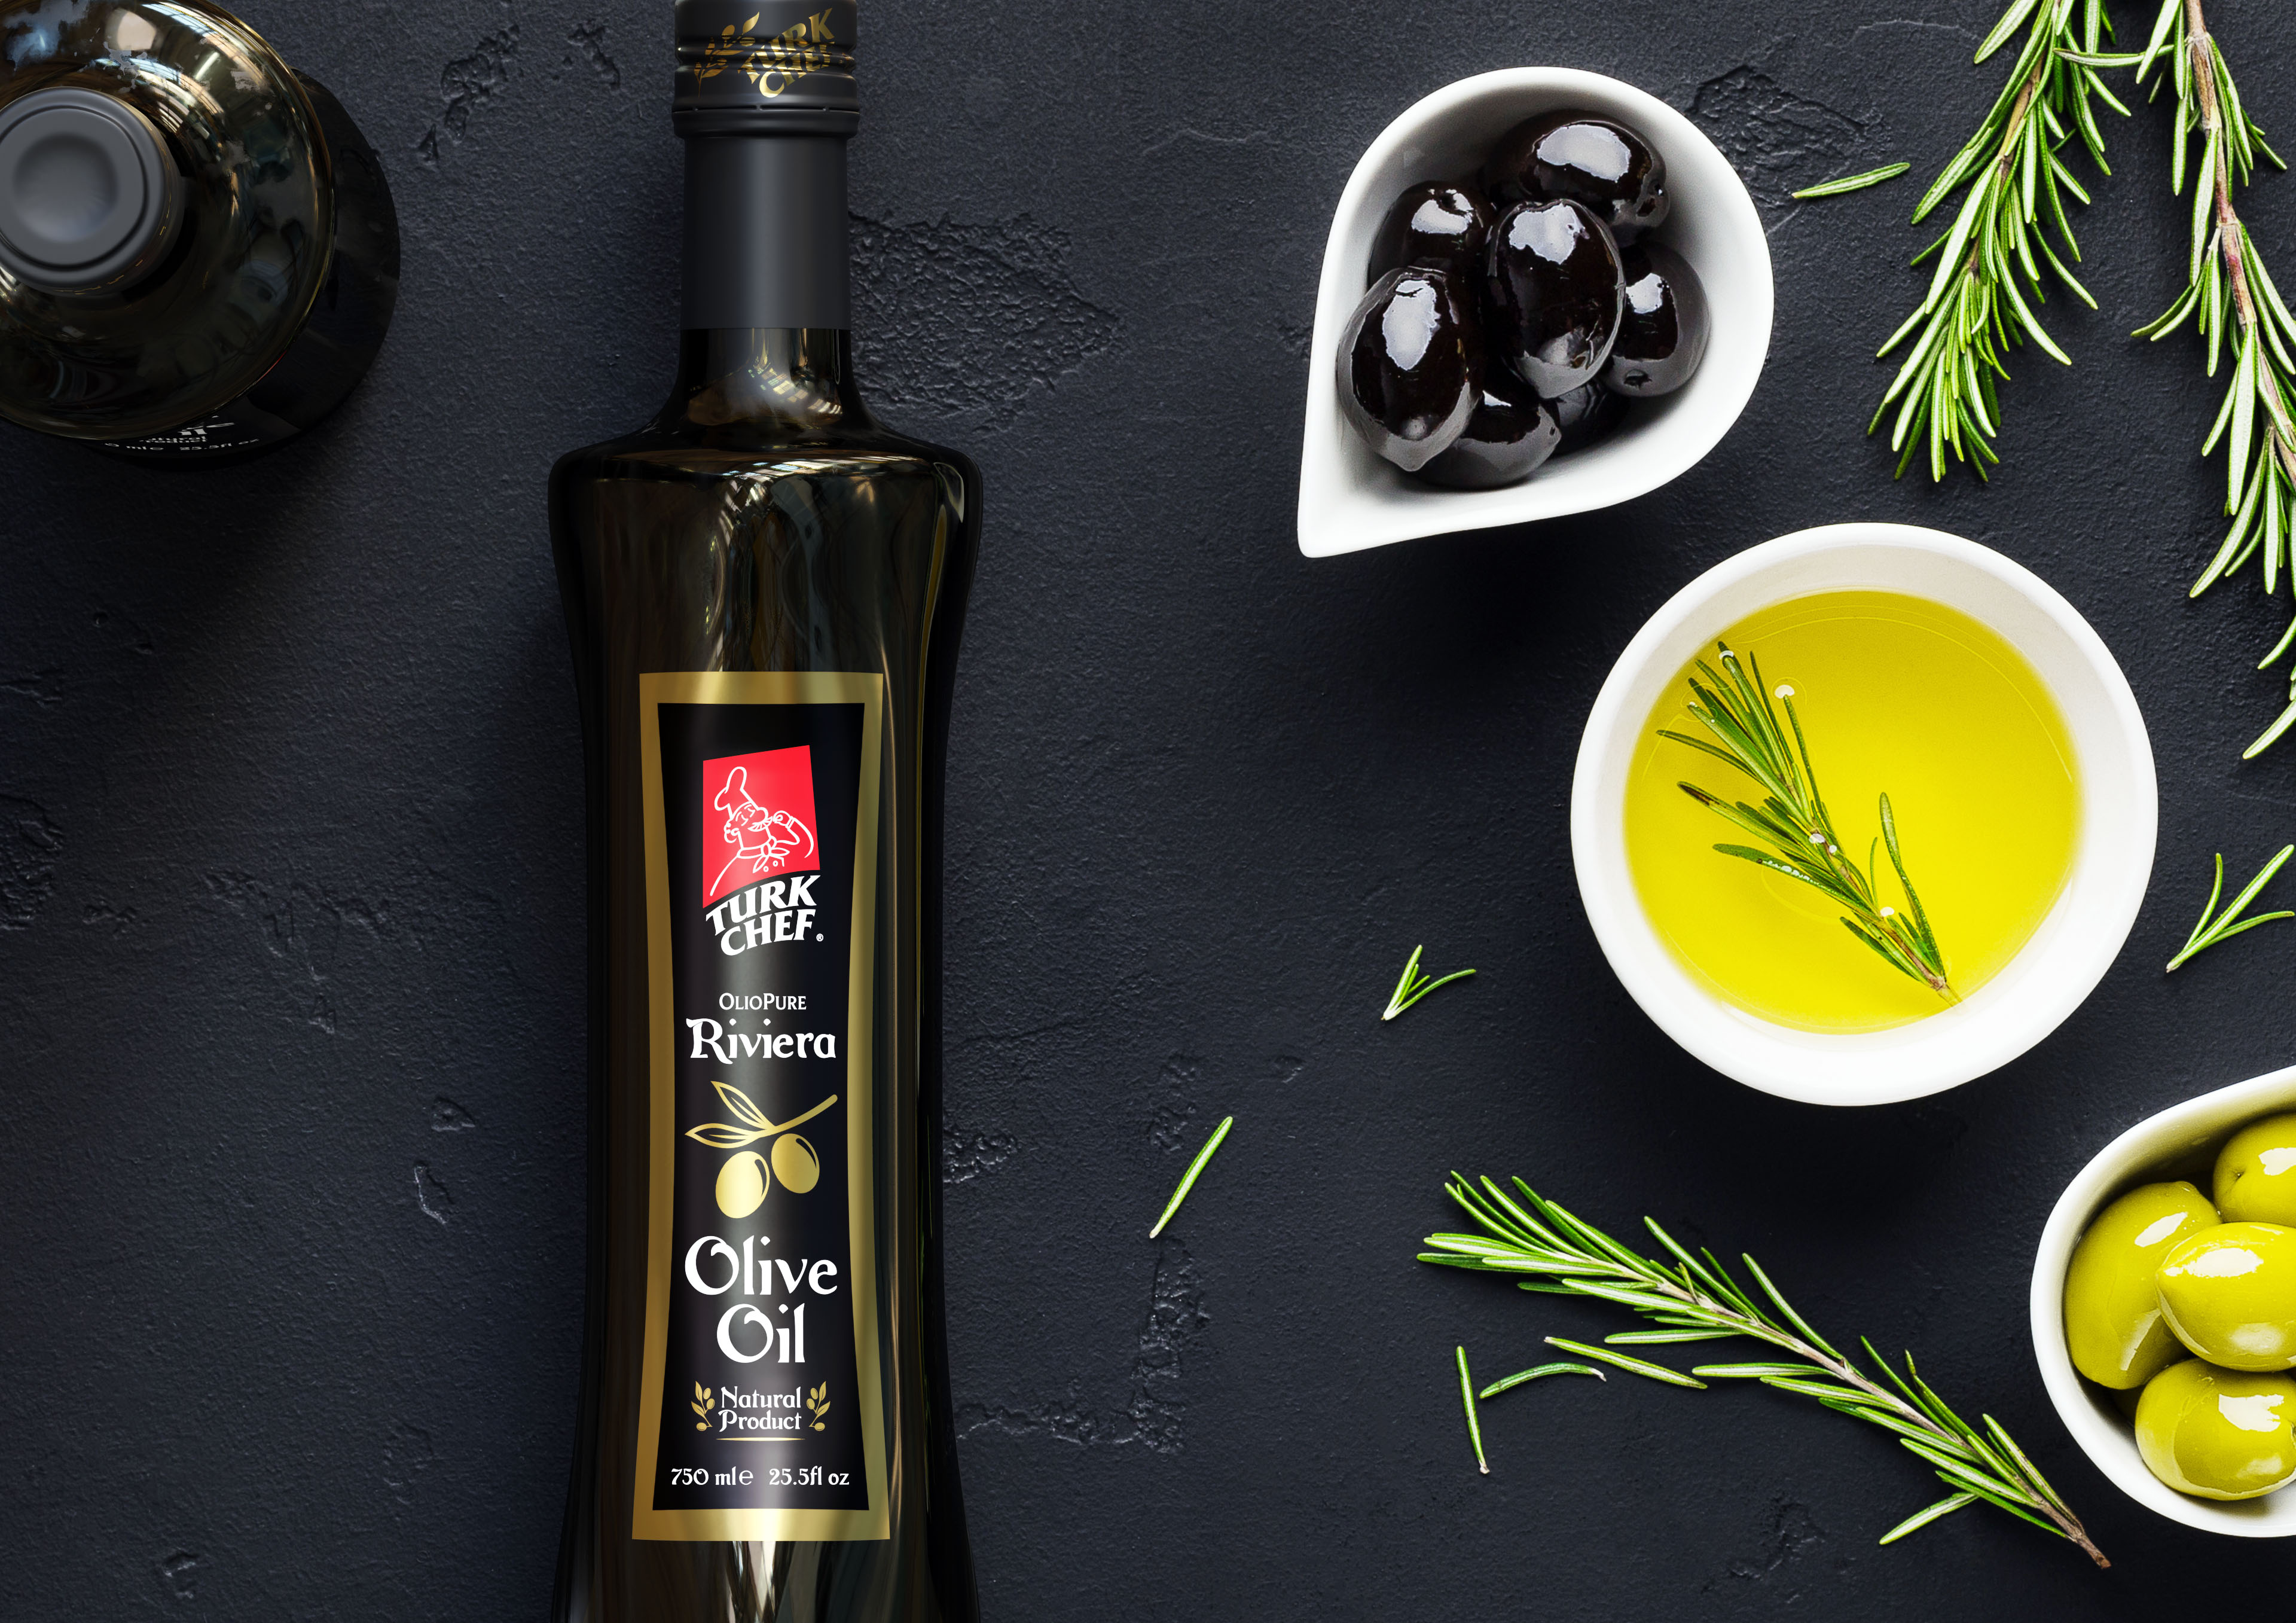 Топ оливкового масла. Оливковое масло. Оливки и оливковое масло. Бутылка оливкового масла. Олив Ойл масло оливковое.